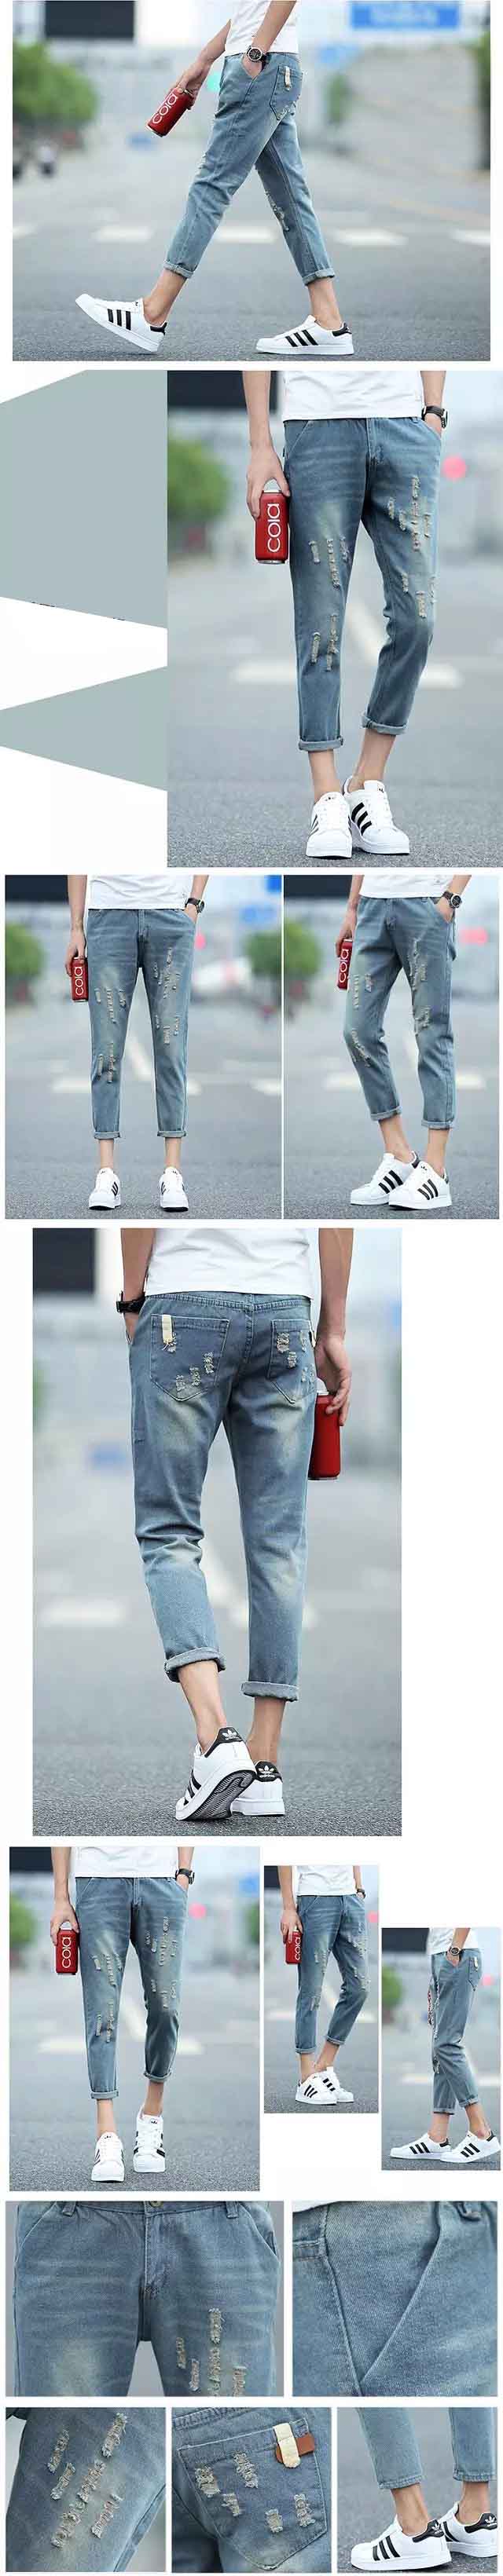 cari celana jeans pria model sobek terbaru ? klik dan pesan online di pfp store, celana jeans model sobek memang menjadi trend lintas generasi yang cocok untuk segala musim